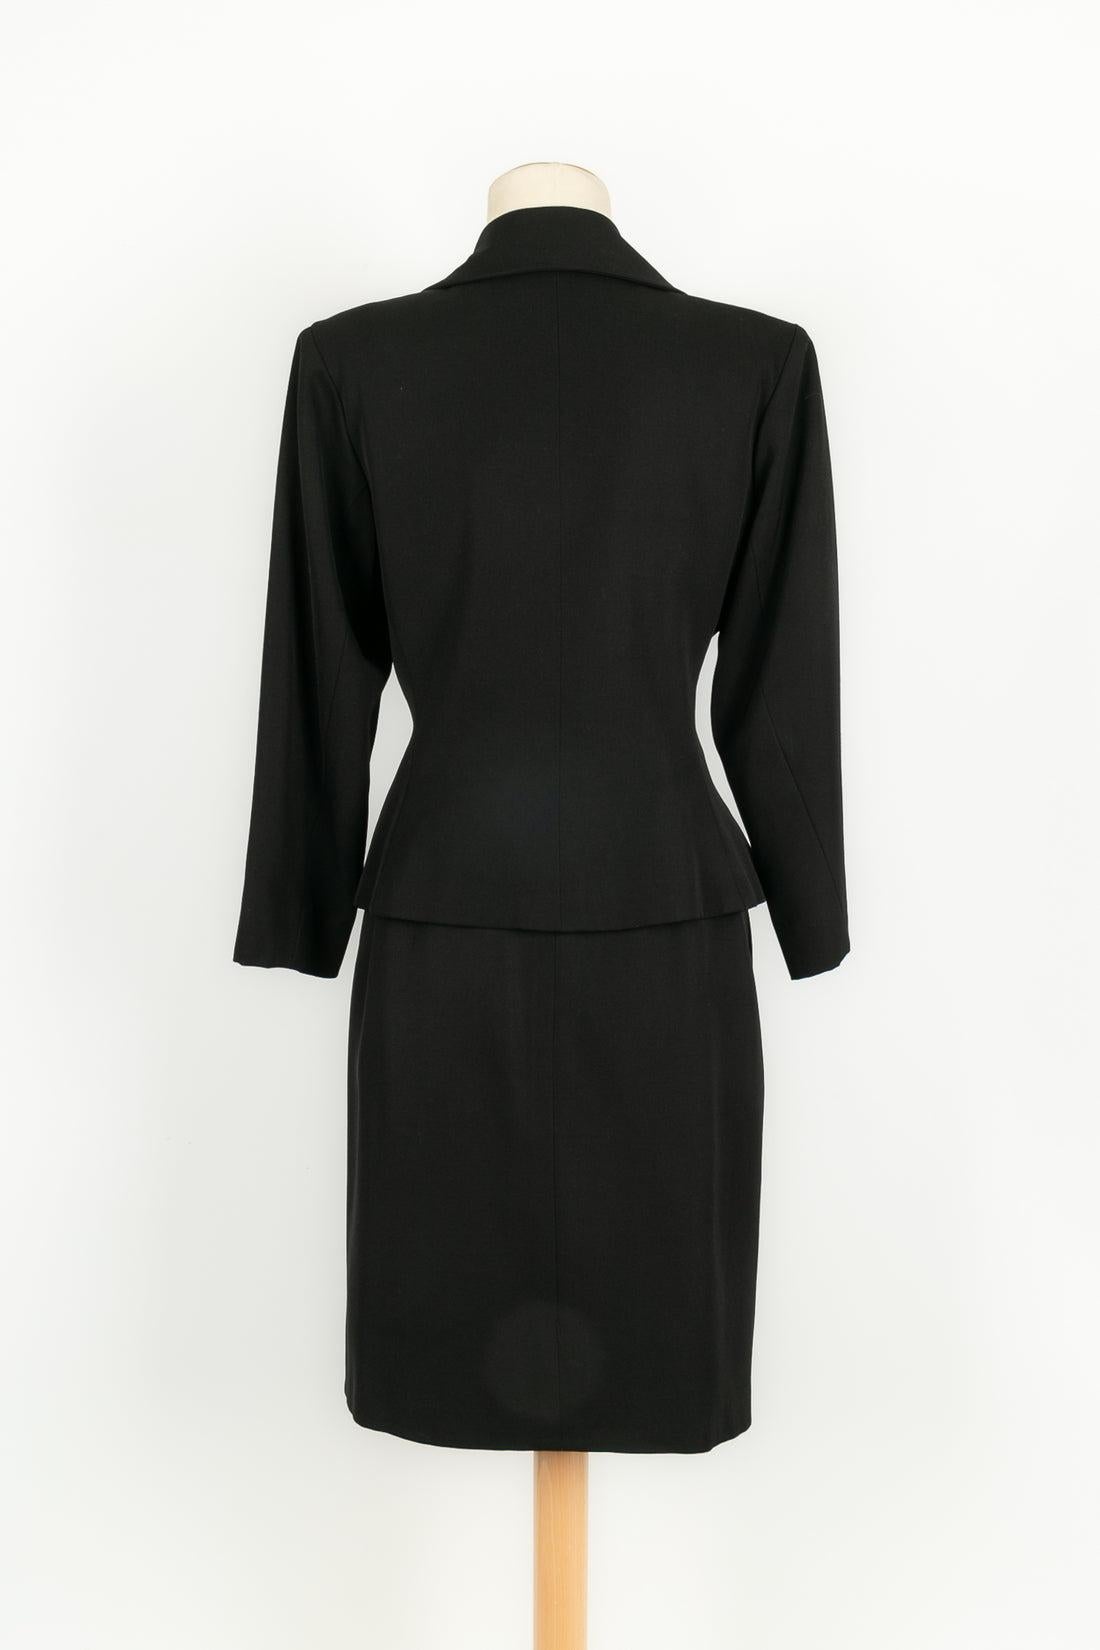 Yves Saint Laurent Black Skirt Suit In Excellent Condition For Sale In SAINT-OUEN-SUR-SEINE, FR